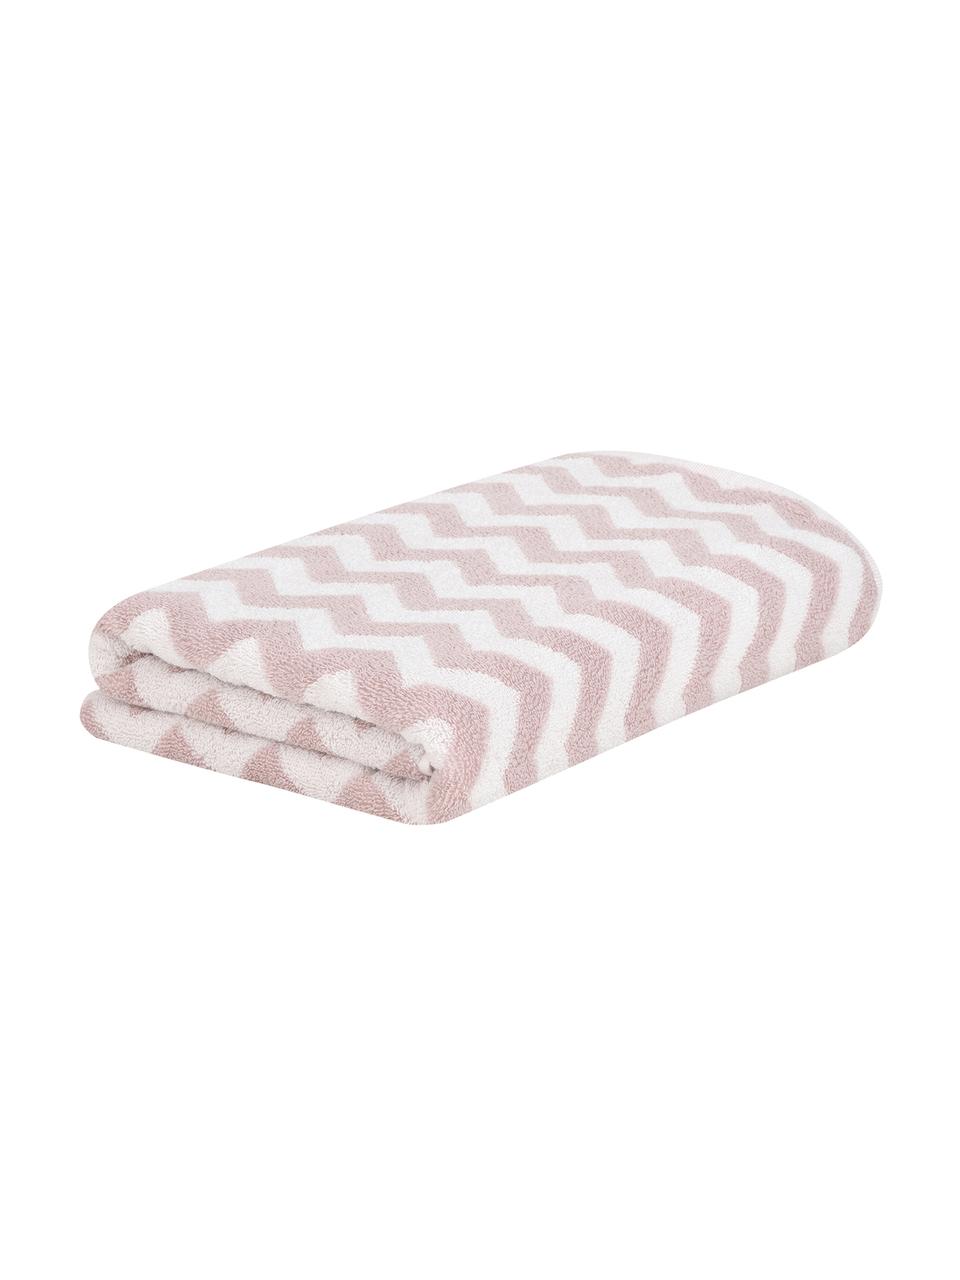 Ręcznik Liv, 2 szt., Blady różowy, Ręcznik dla gości, S 30 x D 50 cm, 2 szt.